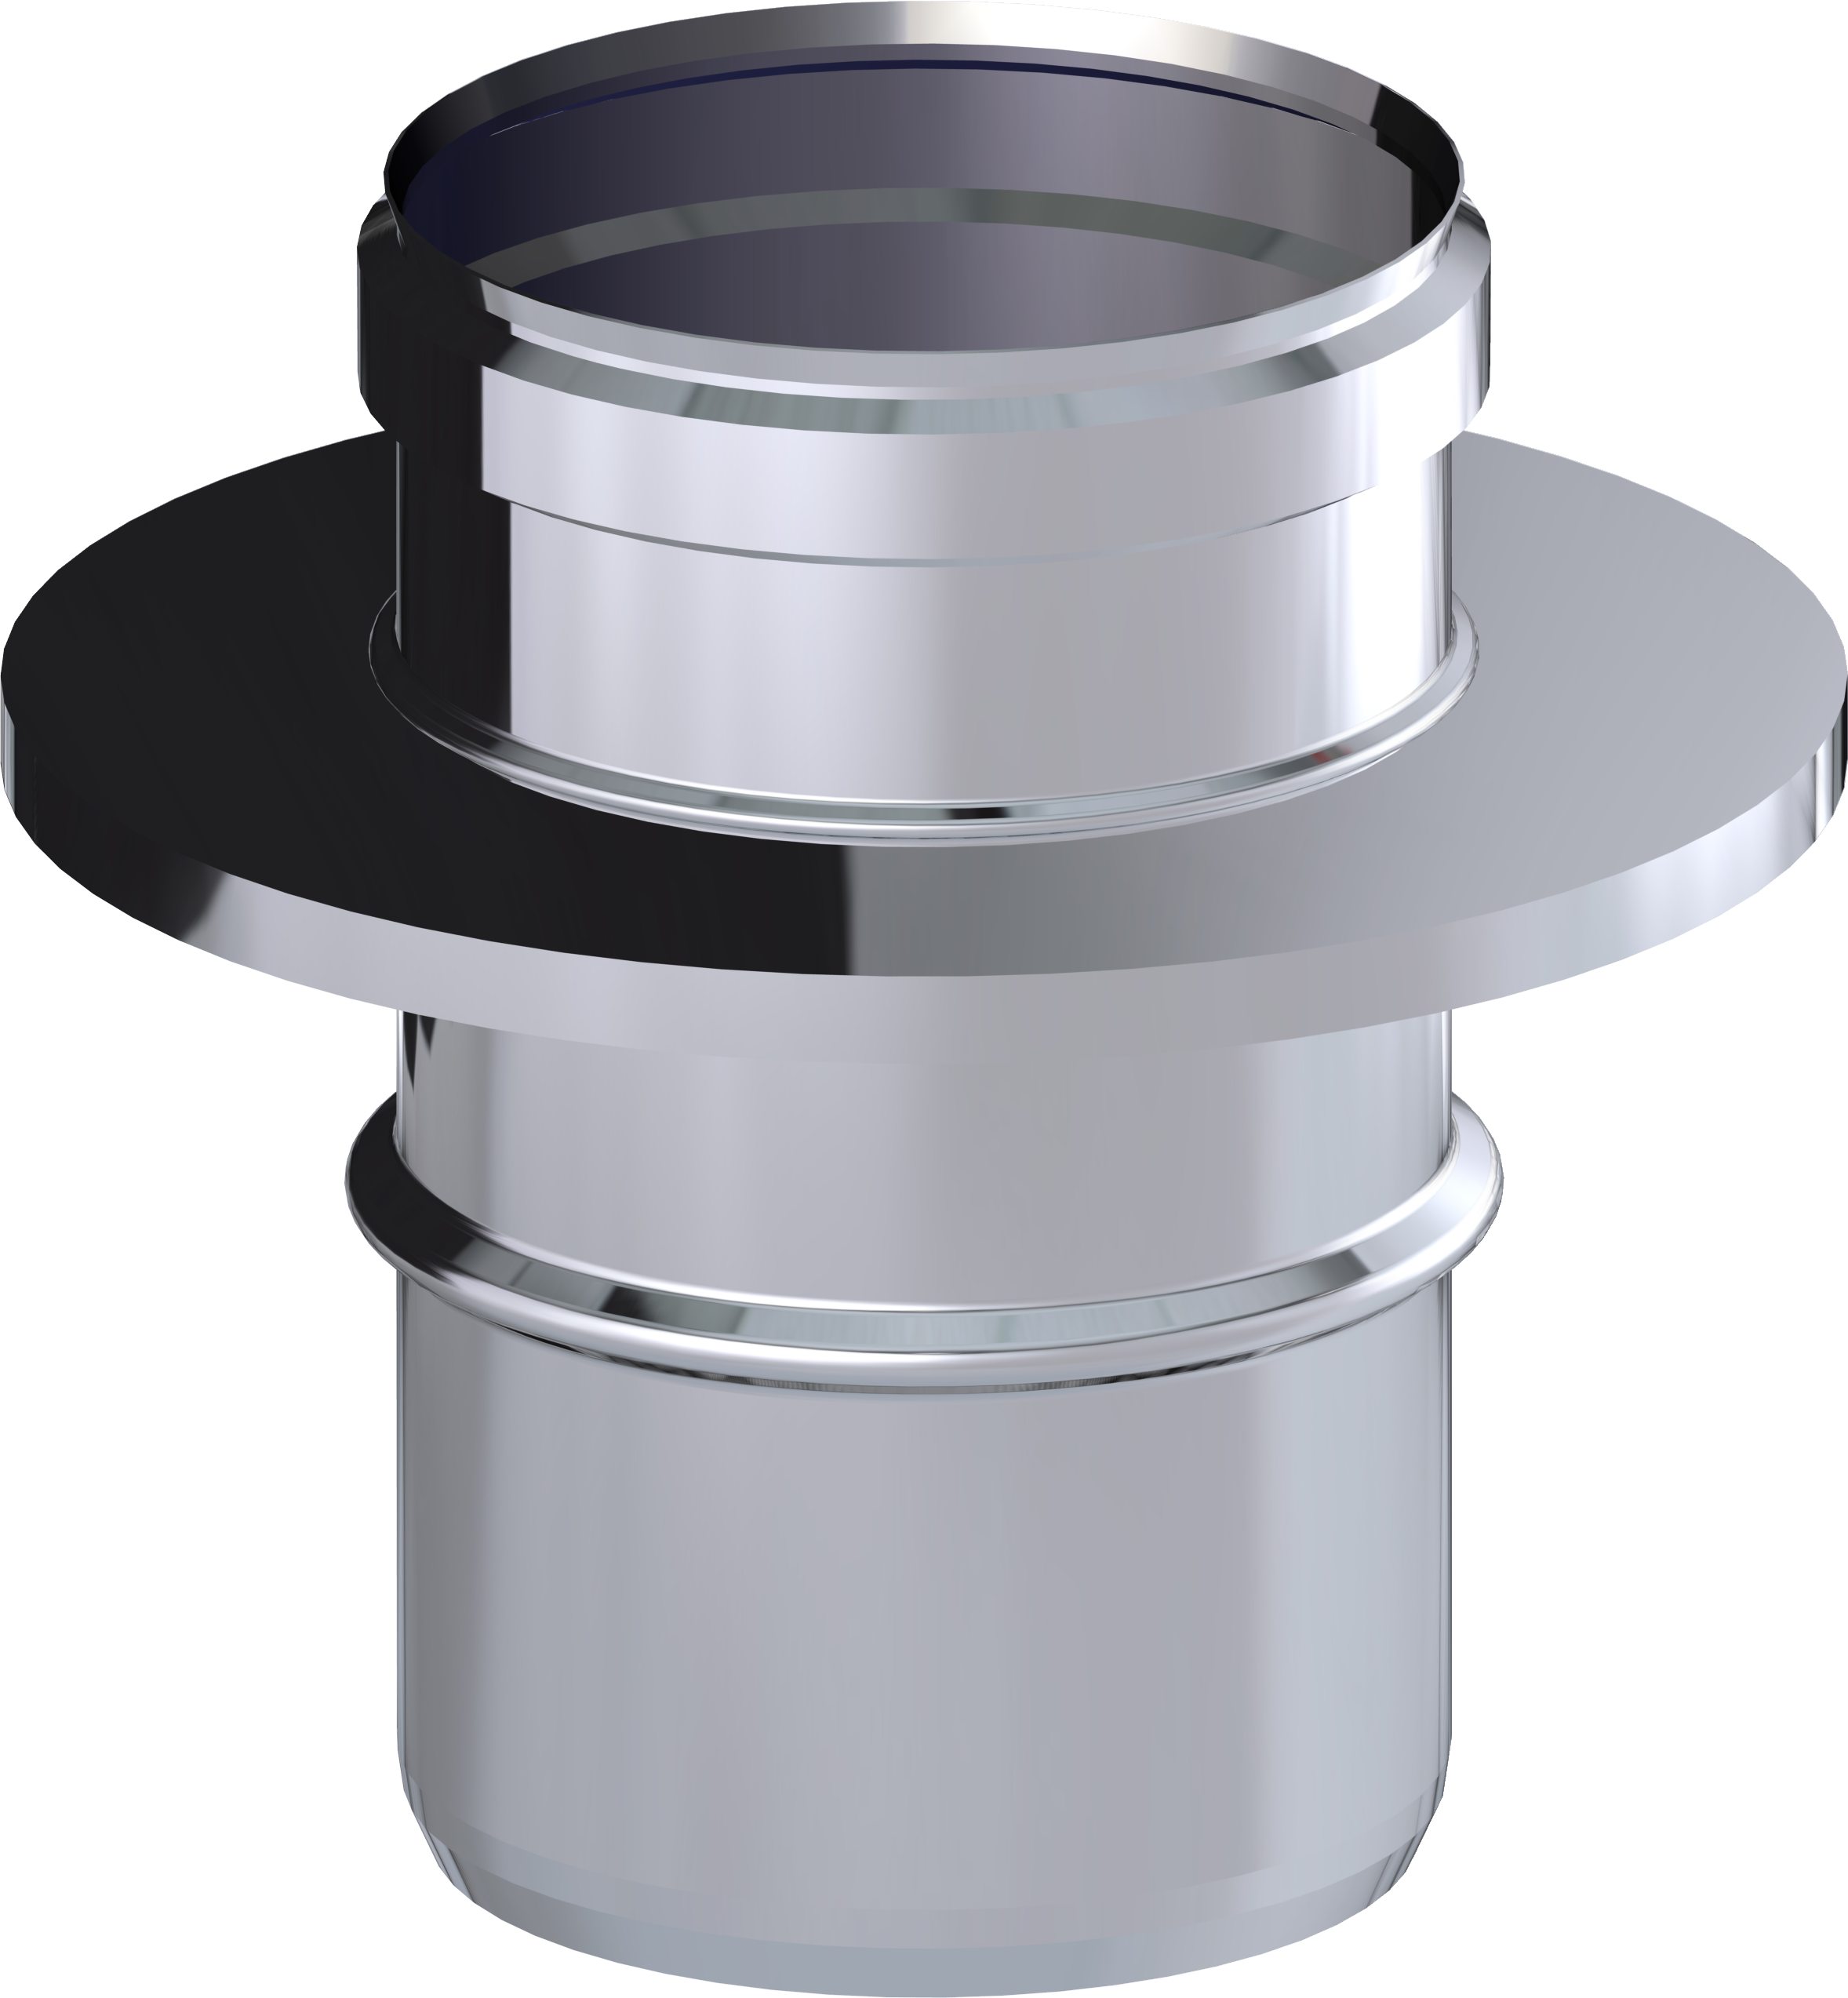 Adaptador para tubo de evacuación de acero inox. color gris de 100mm diámetro